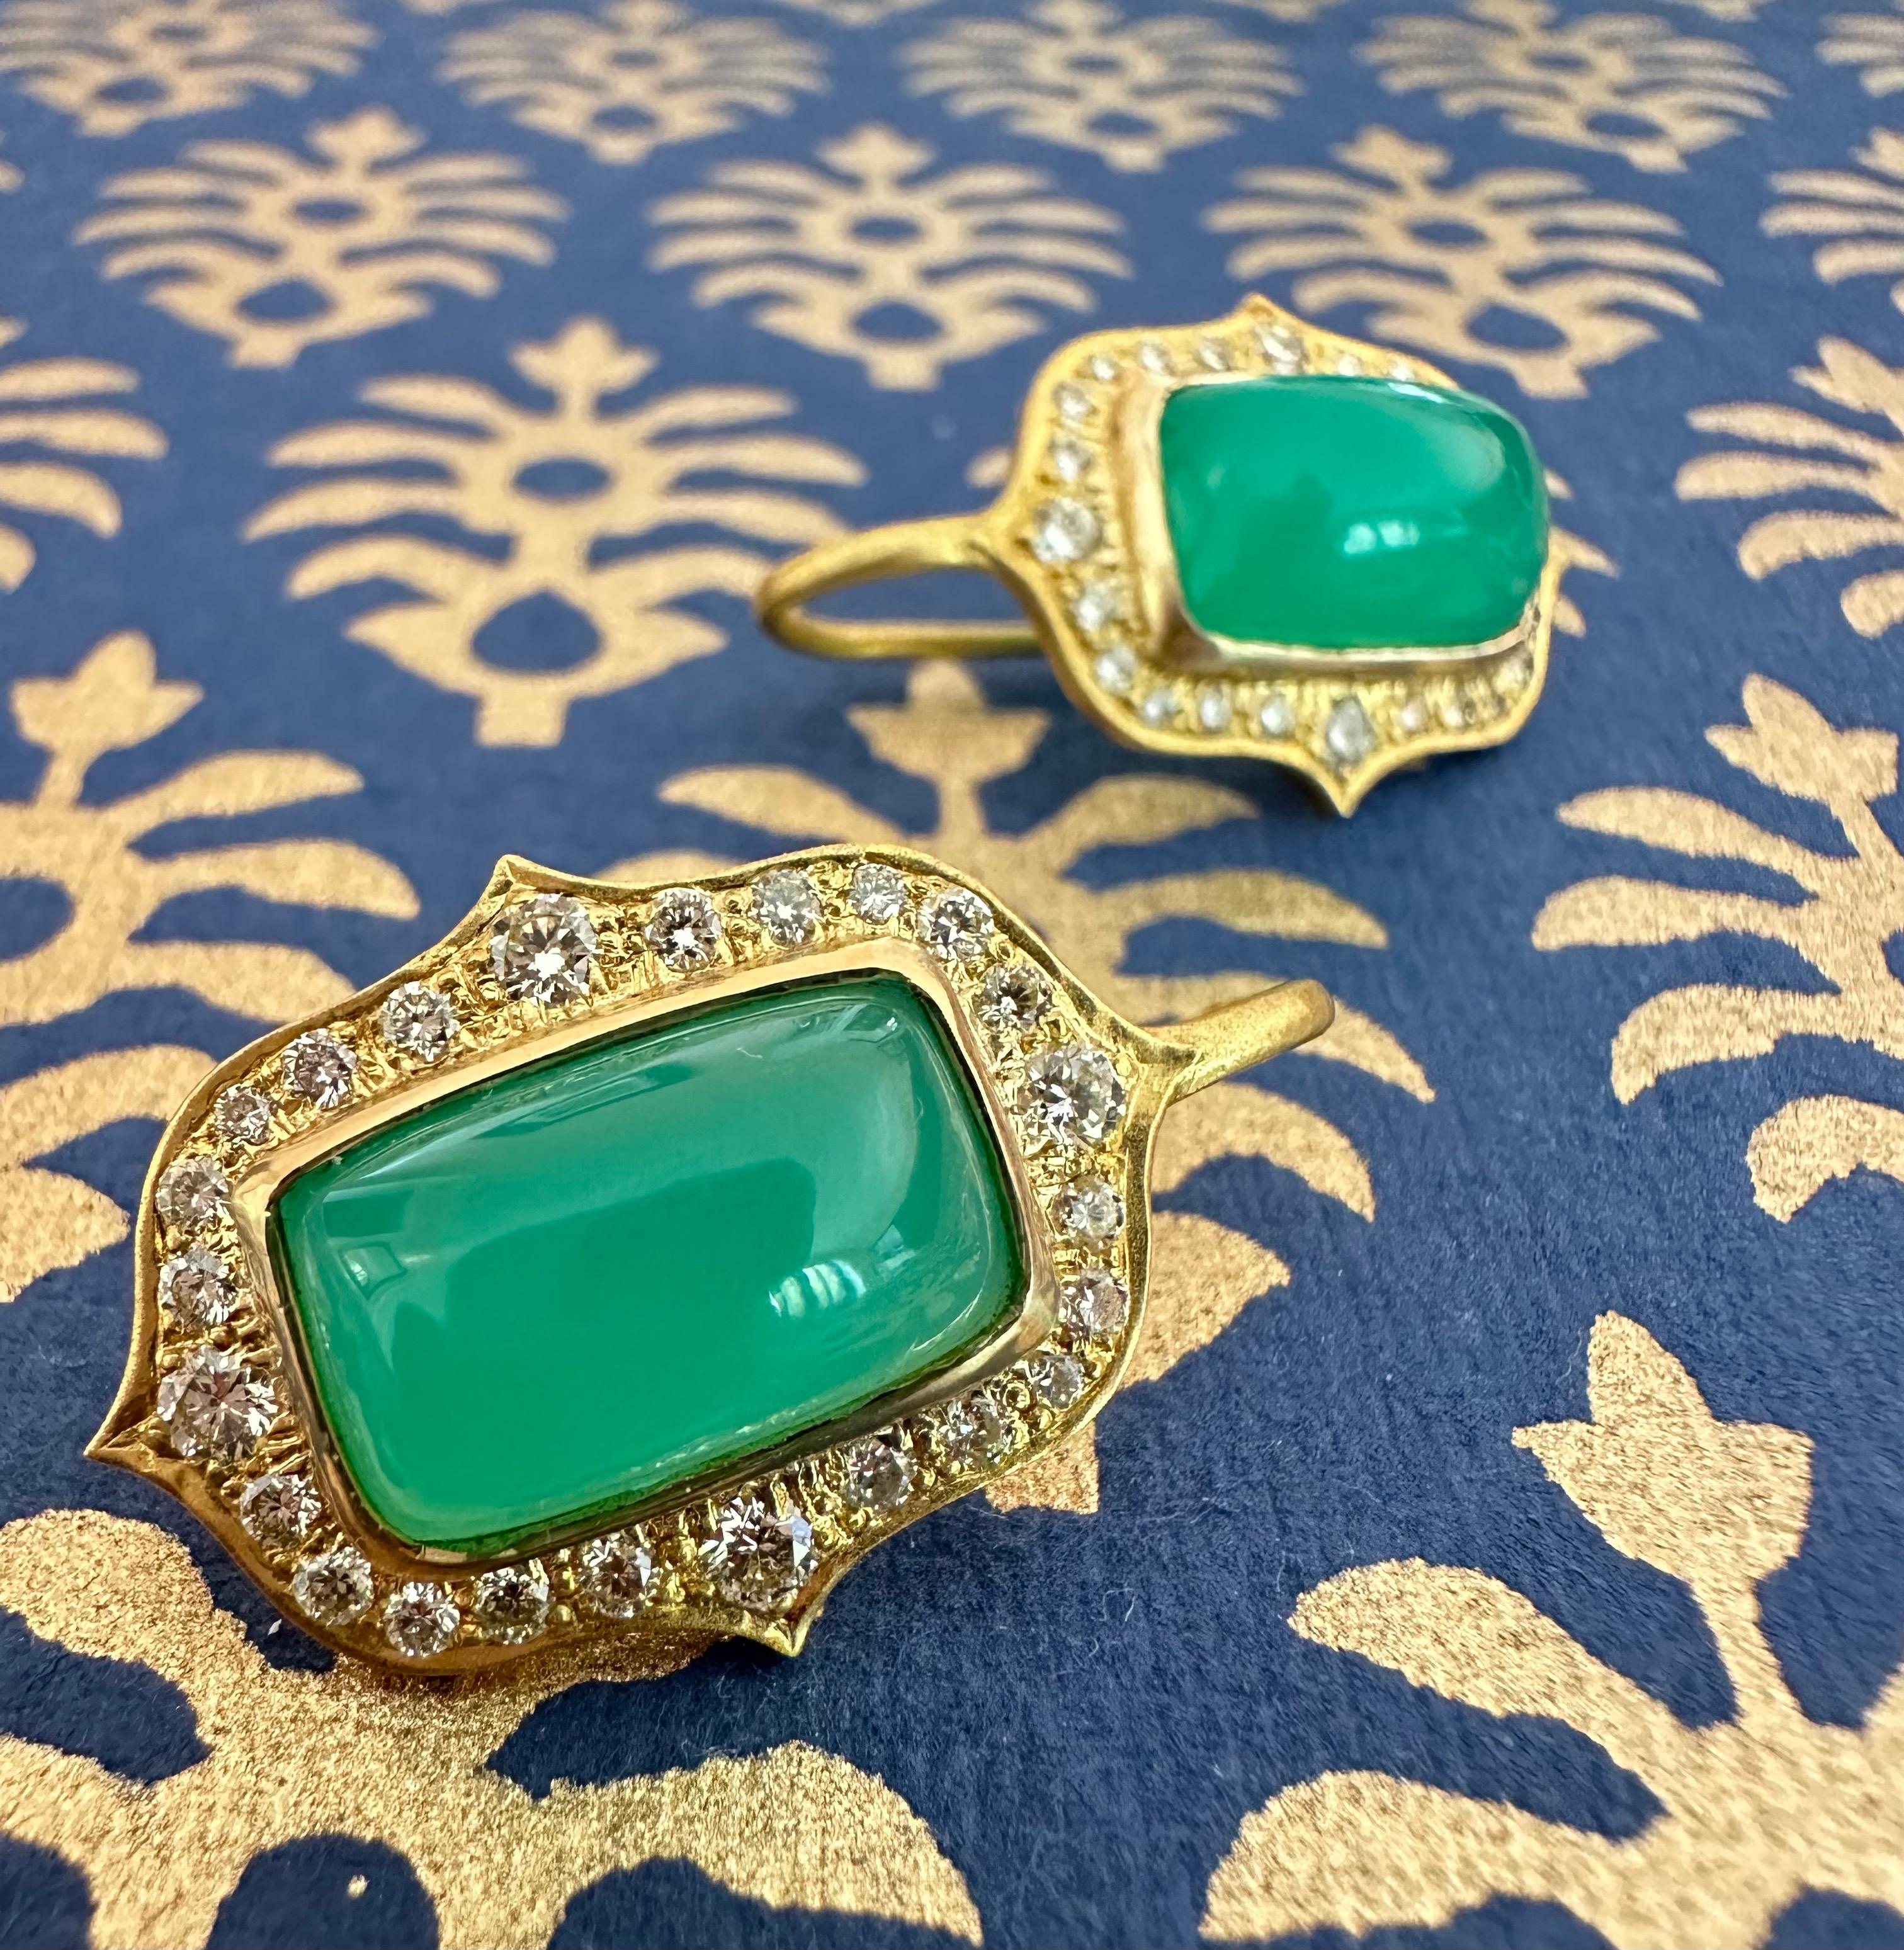 Diese Chrysopras-Ohrringe mit einem weißen Diamanten von 0,96 Karat sind wahrlich WOW-Ohrringe, die Sie nicht enttäuschen werden! Die von der preisgekrönten Schmuckdesignerin Lauren Harper entworfenen, leuchtend grünen Cabochon-Mittelsteine sind von